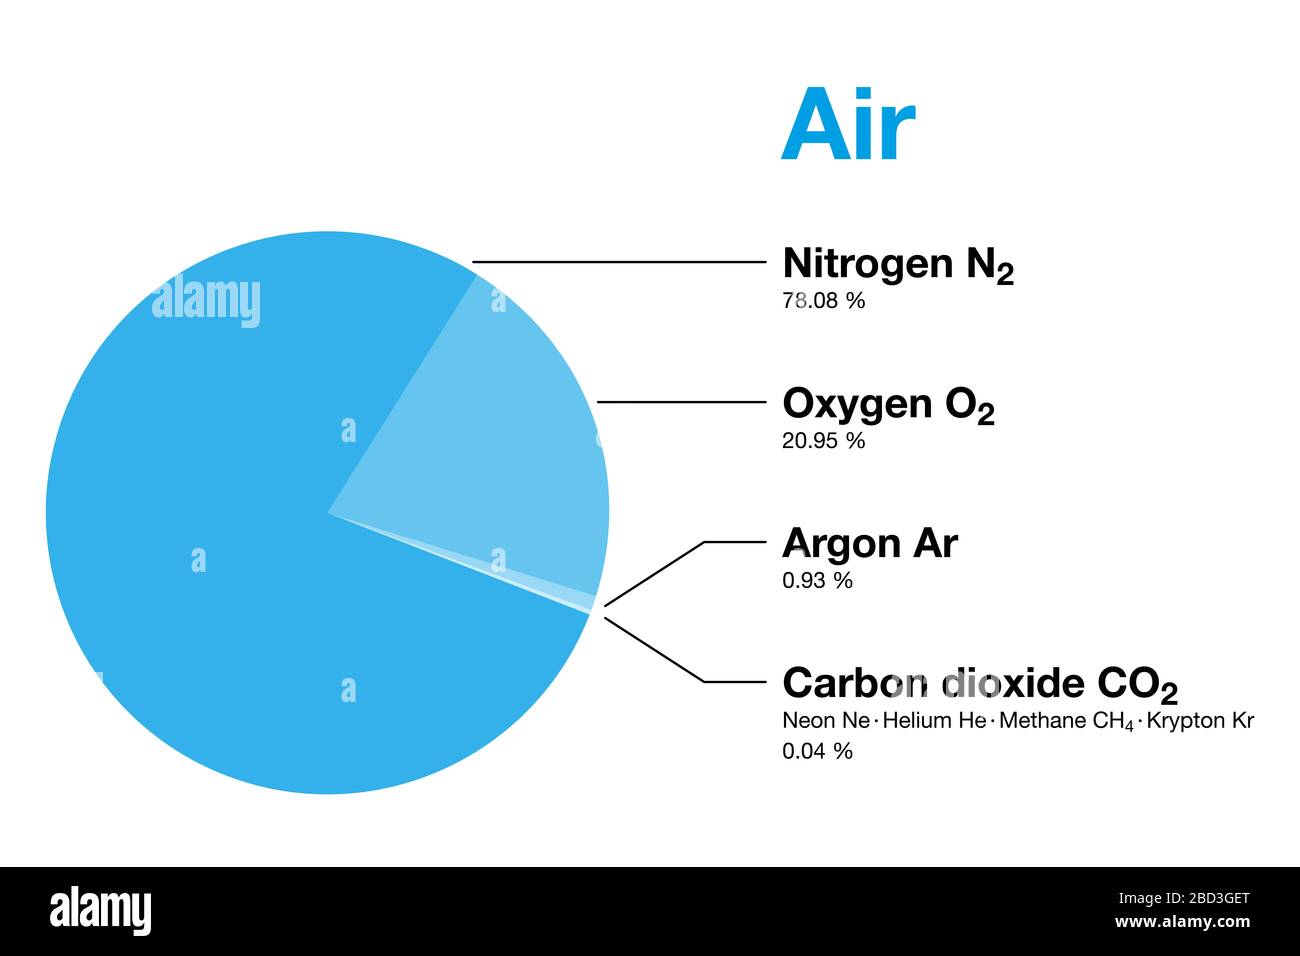 Aire, composición de la atmósfera terrestre por volumen, excluyendo el vapor de agua. El aire seco contiene nitrógeno, oxígeno, argón, dióxido de carbono y otros gases. Foto de stock